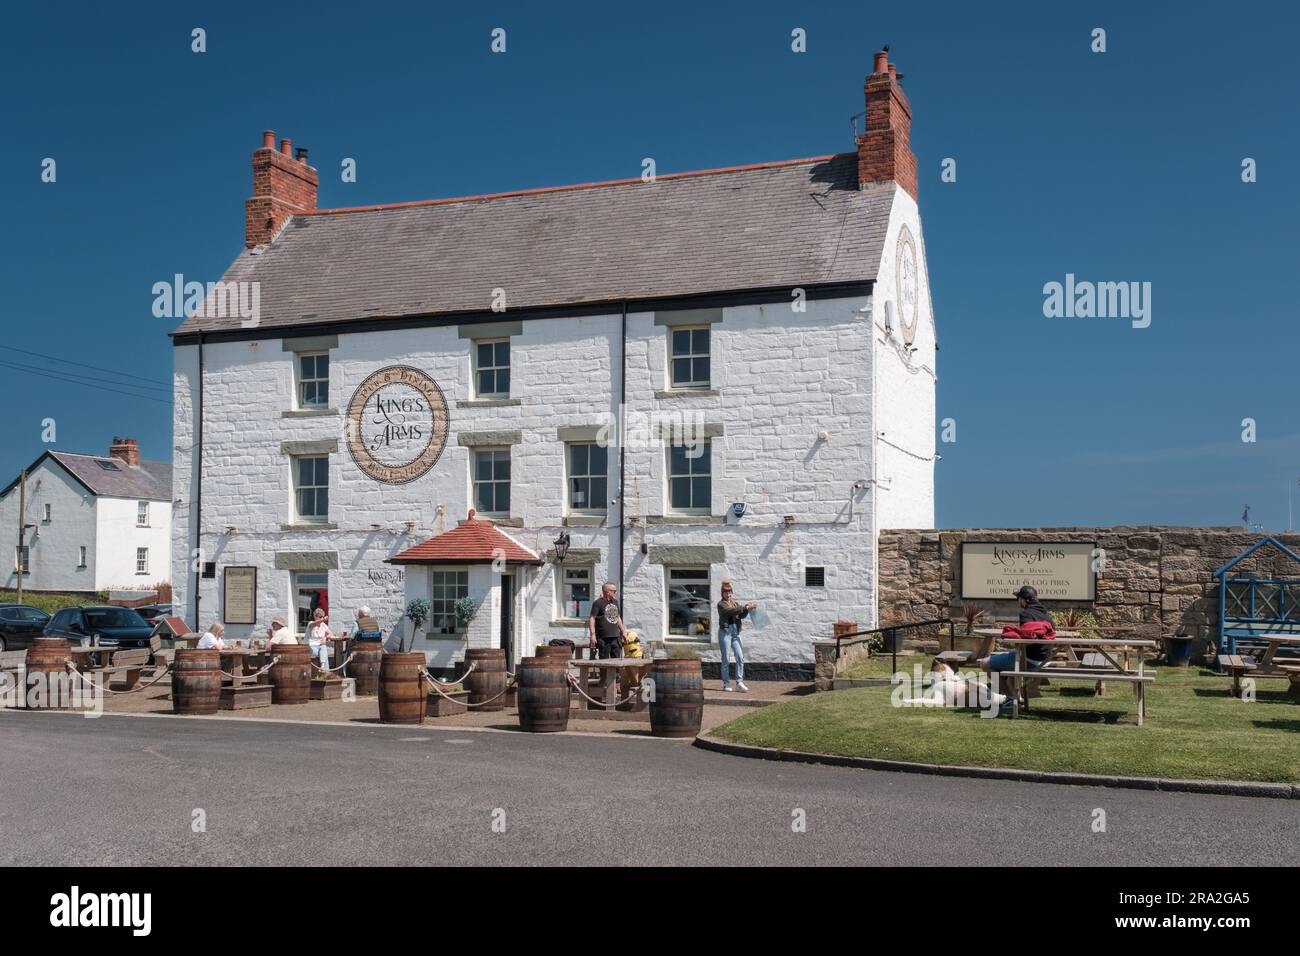 I clienti che si godono il sole estivo nel giardino del pub del Kings Arms Public House presso Seaton Sluice sulla costa del Northumberland Foto Stock